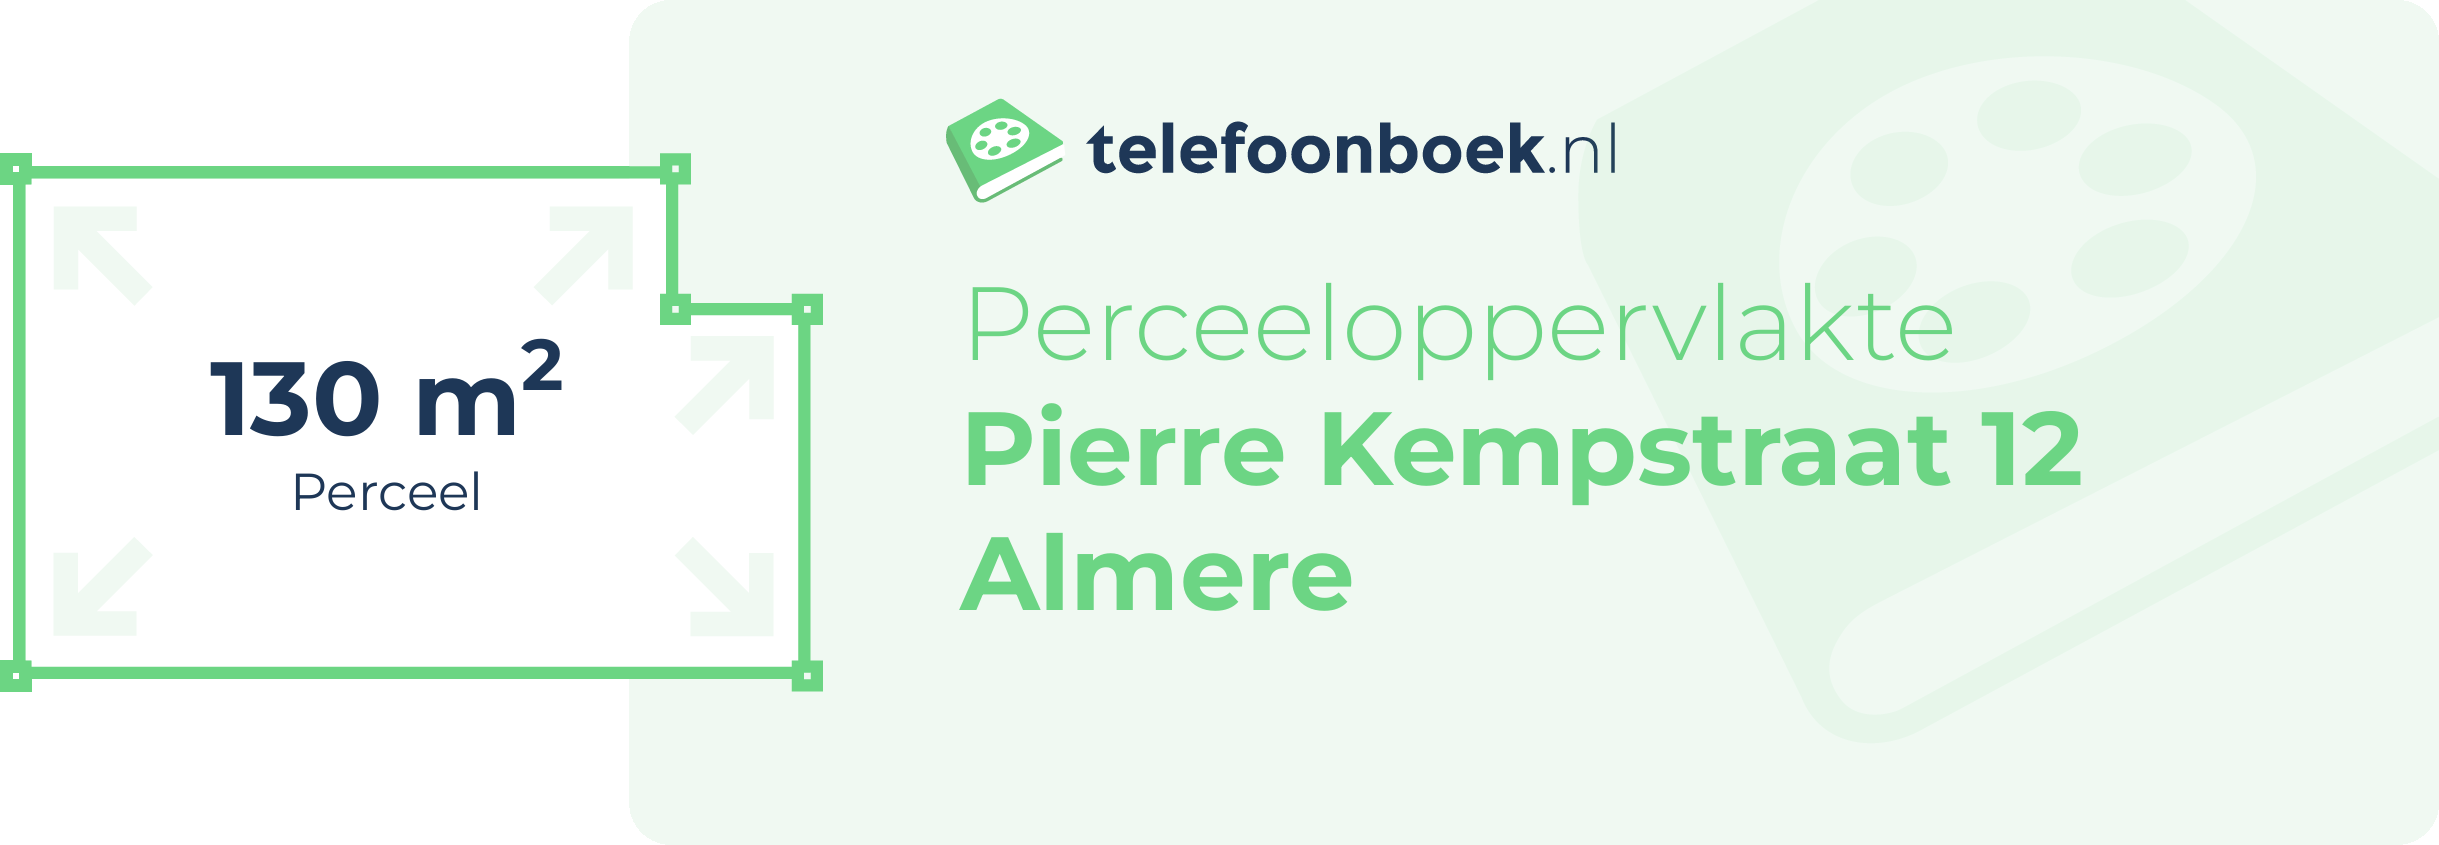 Perceeloppervlakte Pierre Kempstraat 12 Almere